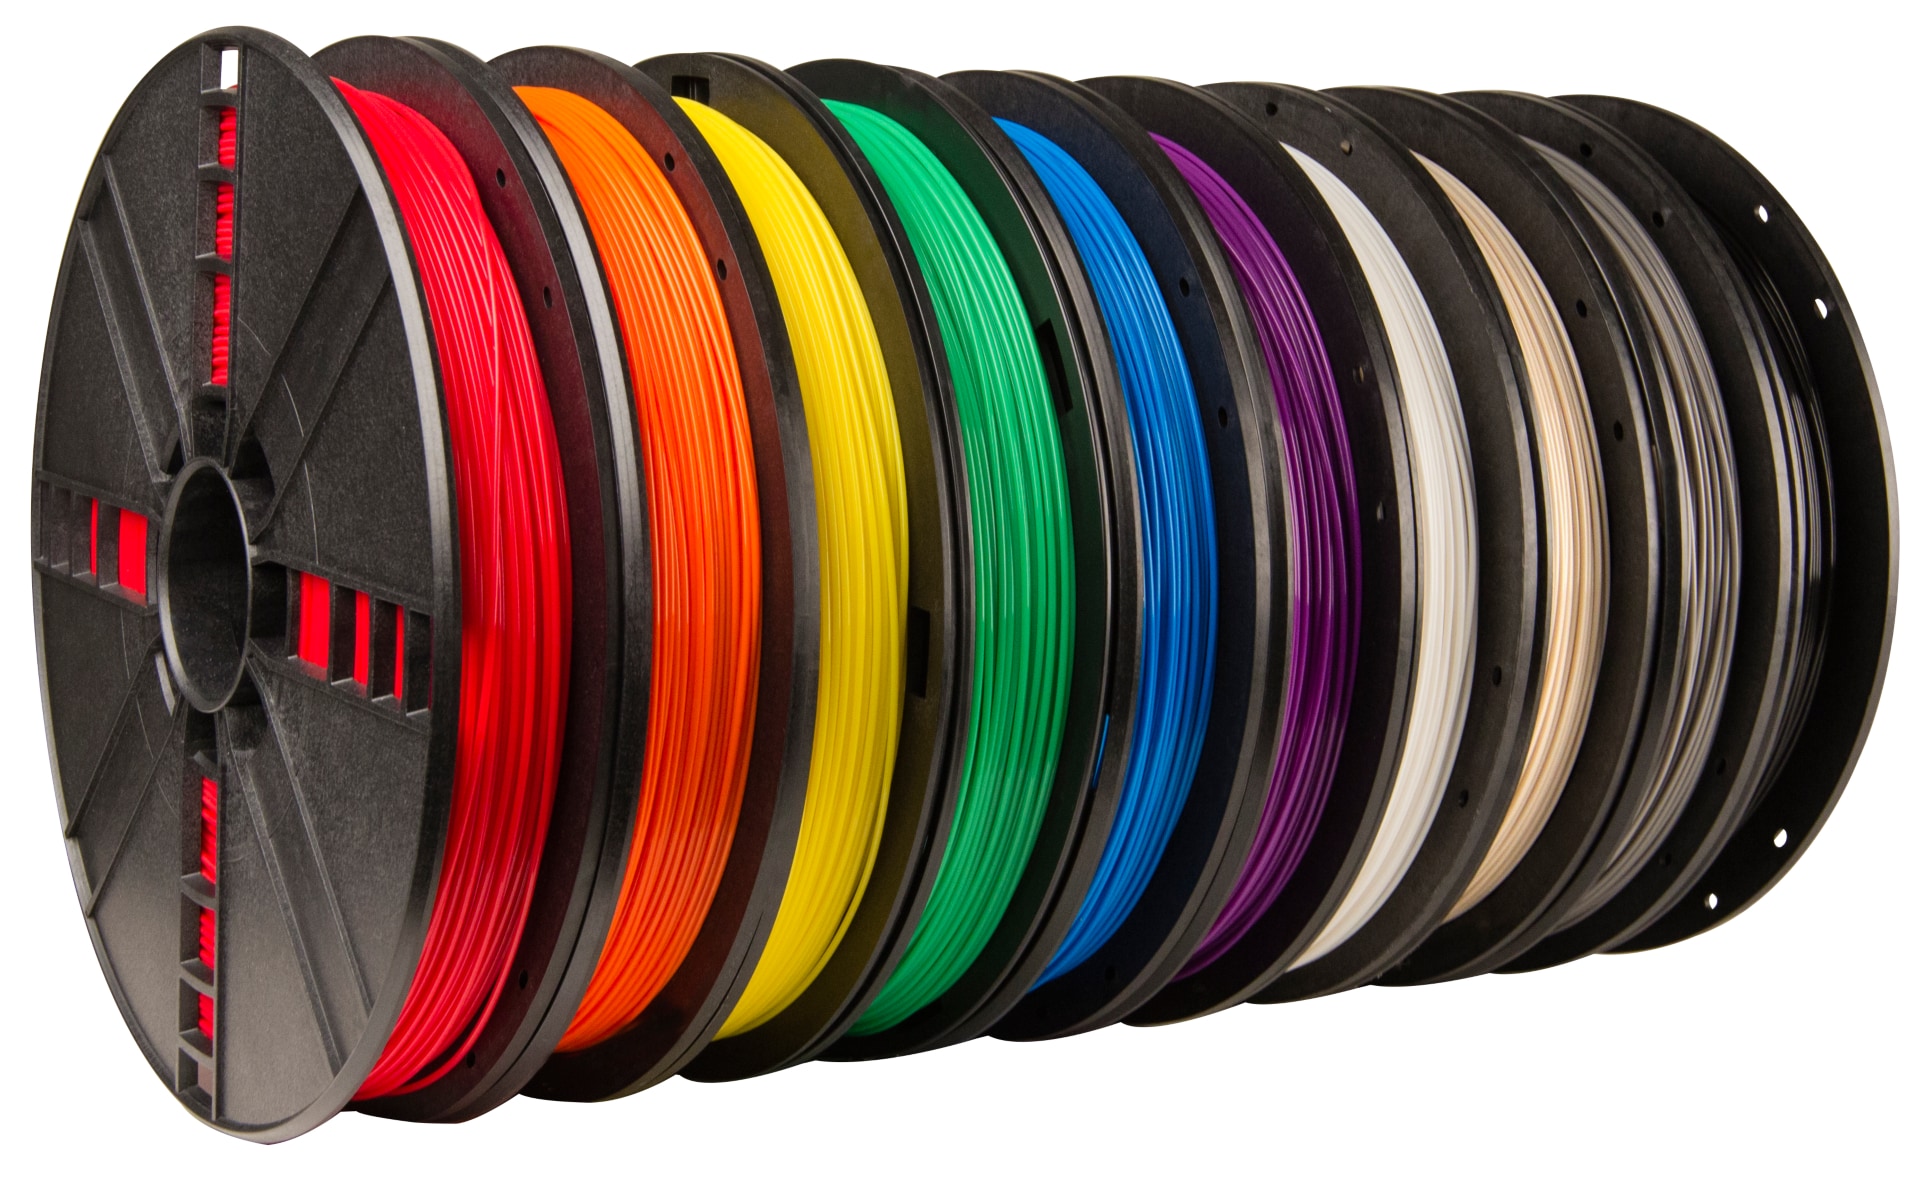 MakerBot PLA Filament (Large Spools) – 10PK Assorted Colors